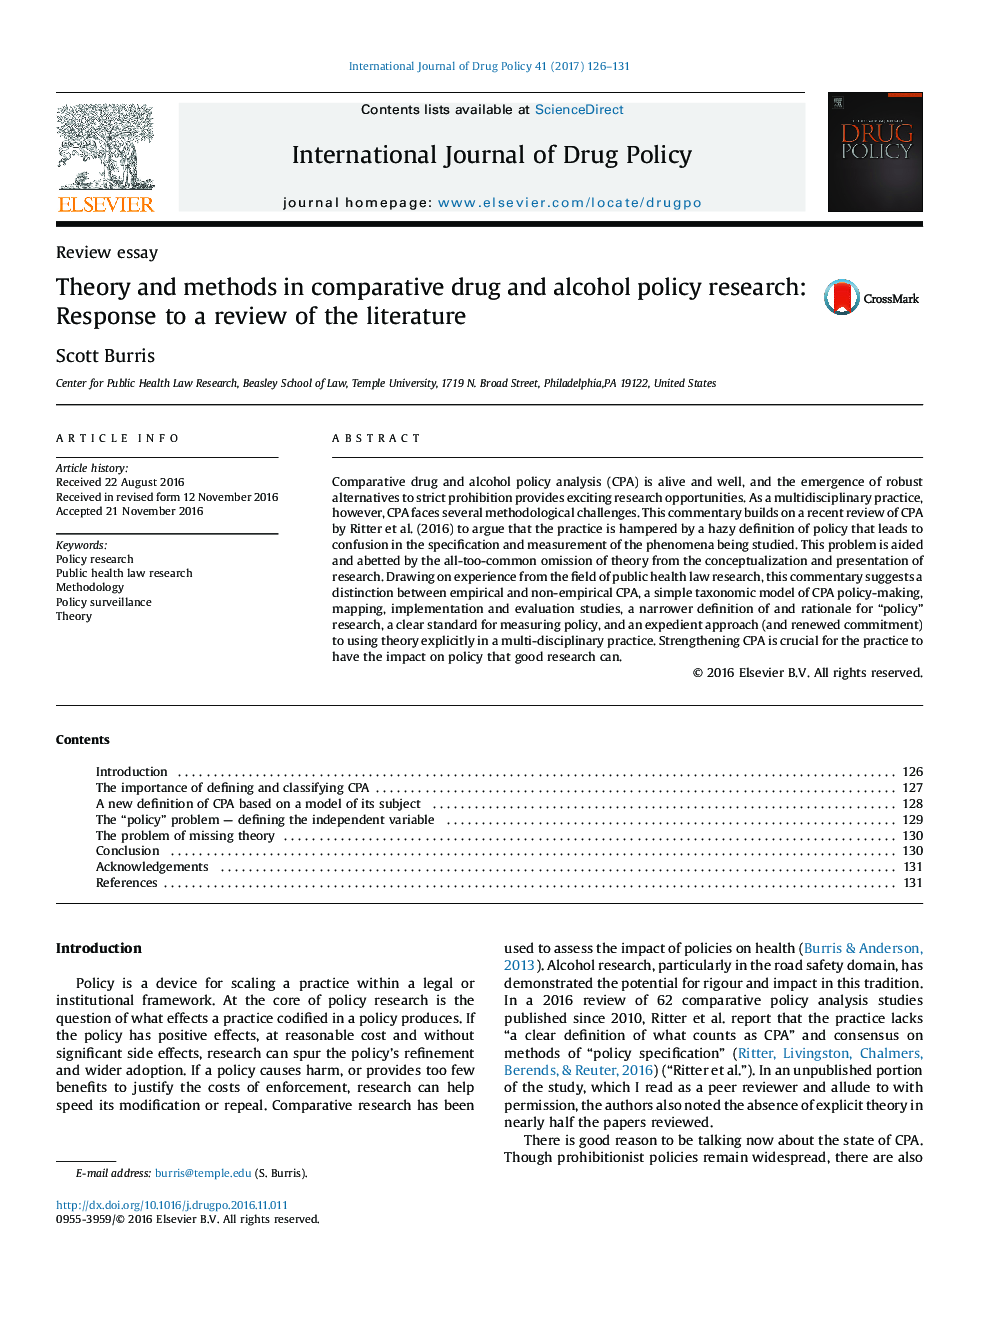 نظریه و روش تحقیق در سیاست دارو و الکل مقایسه: پاسخ به بررسی ادبیات 